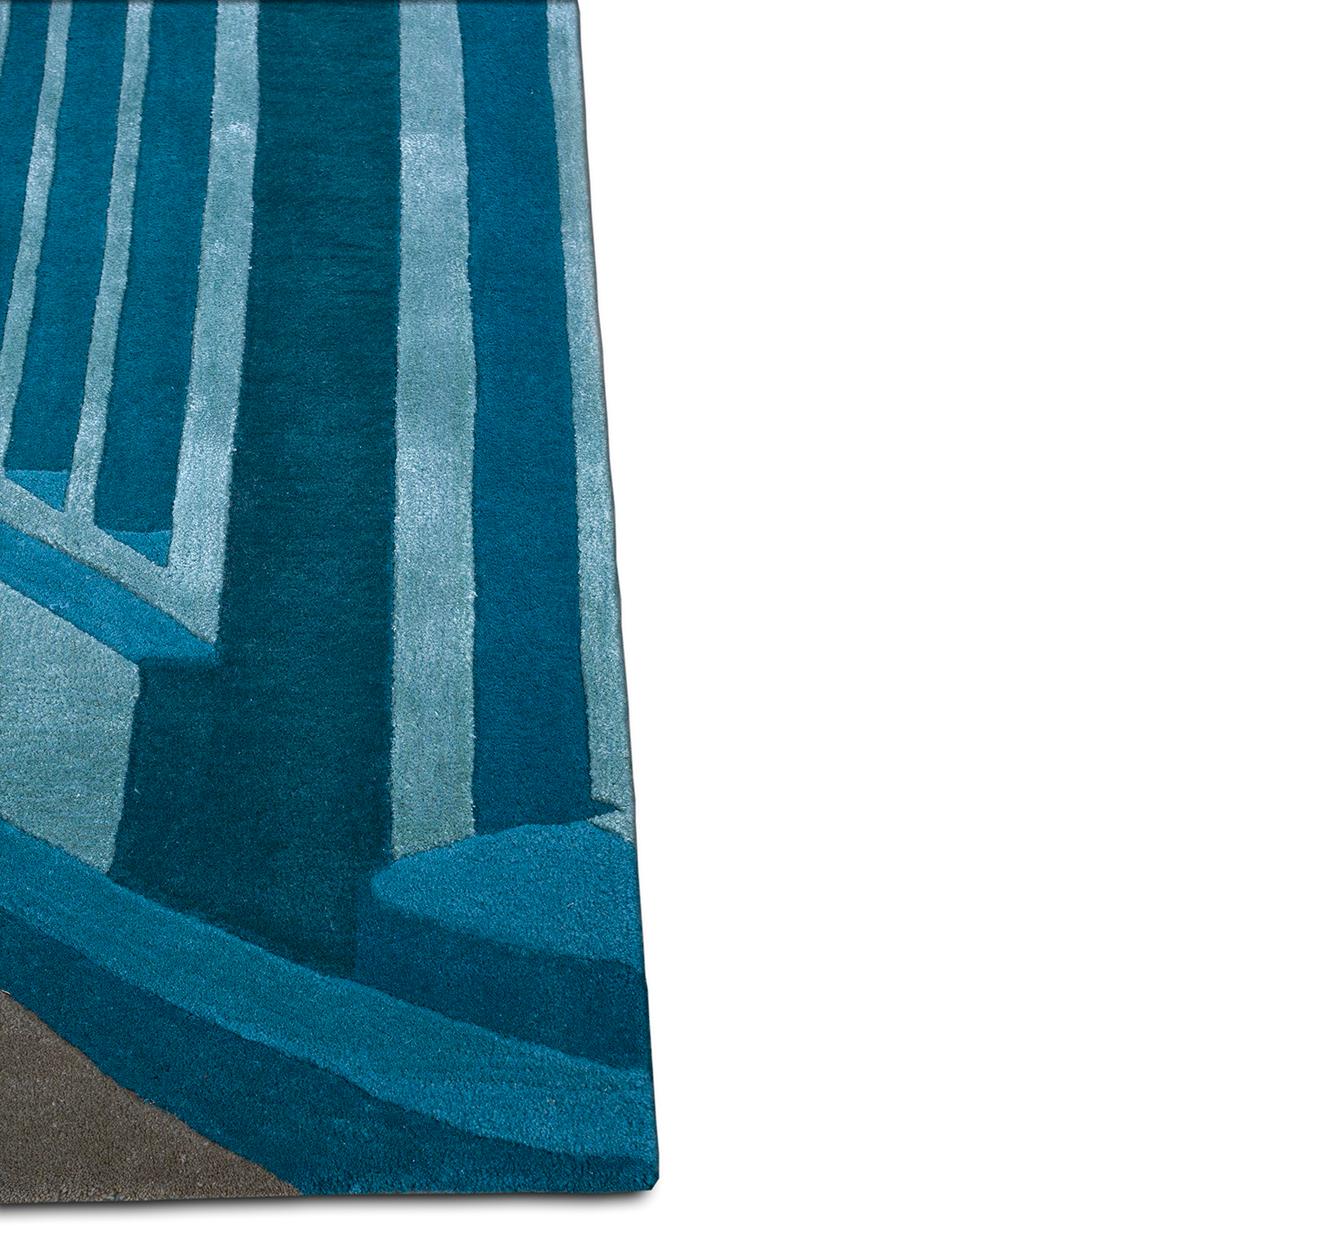 Entdecken Sie mit unseren handgetufteten Teppichen eine harmonische Mischung aus modernem Design und jahrhundertealter Kunstfertigkeit. Jedes Stück ist eine Leinwand, auf der moderne Muster auf die Seele traditioneller Handtufting-Techniken treffen.